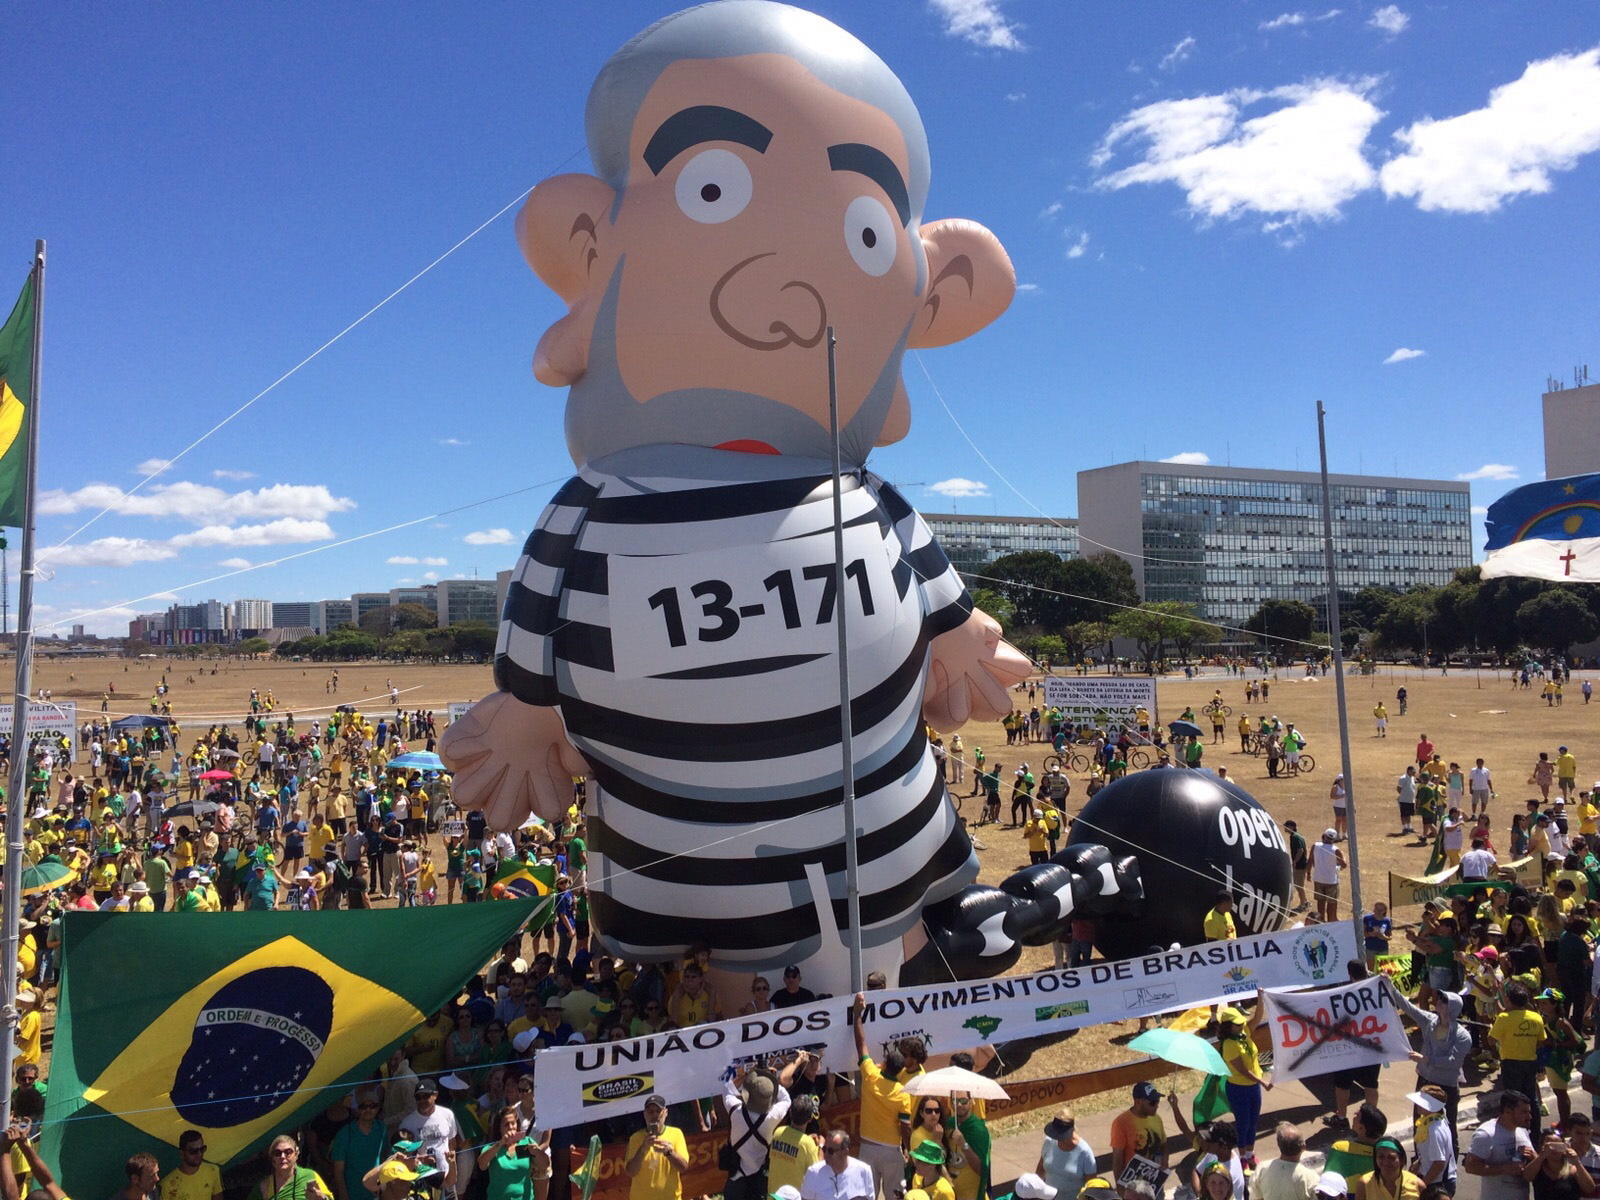 Boneco Gigante do Lula sofre atentado